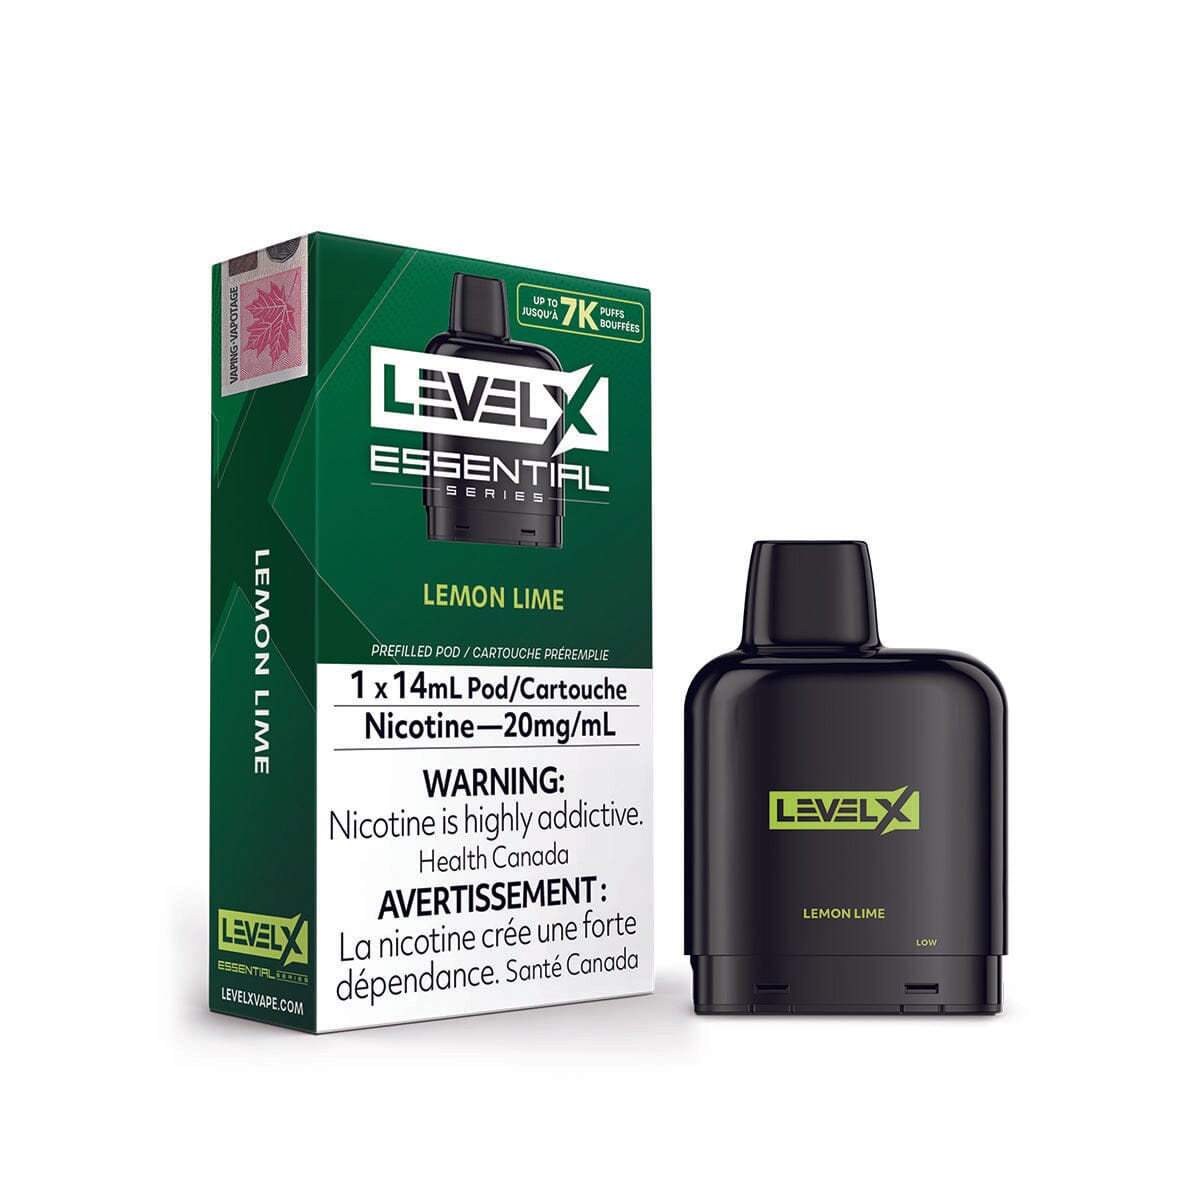 Level X Essential Series Lemon Lime Disposable Vape Pod Disposable Level X 